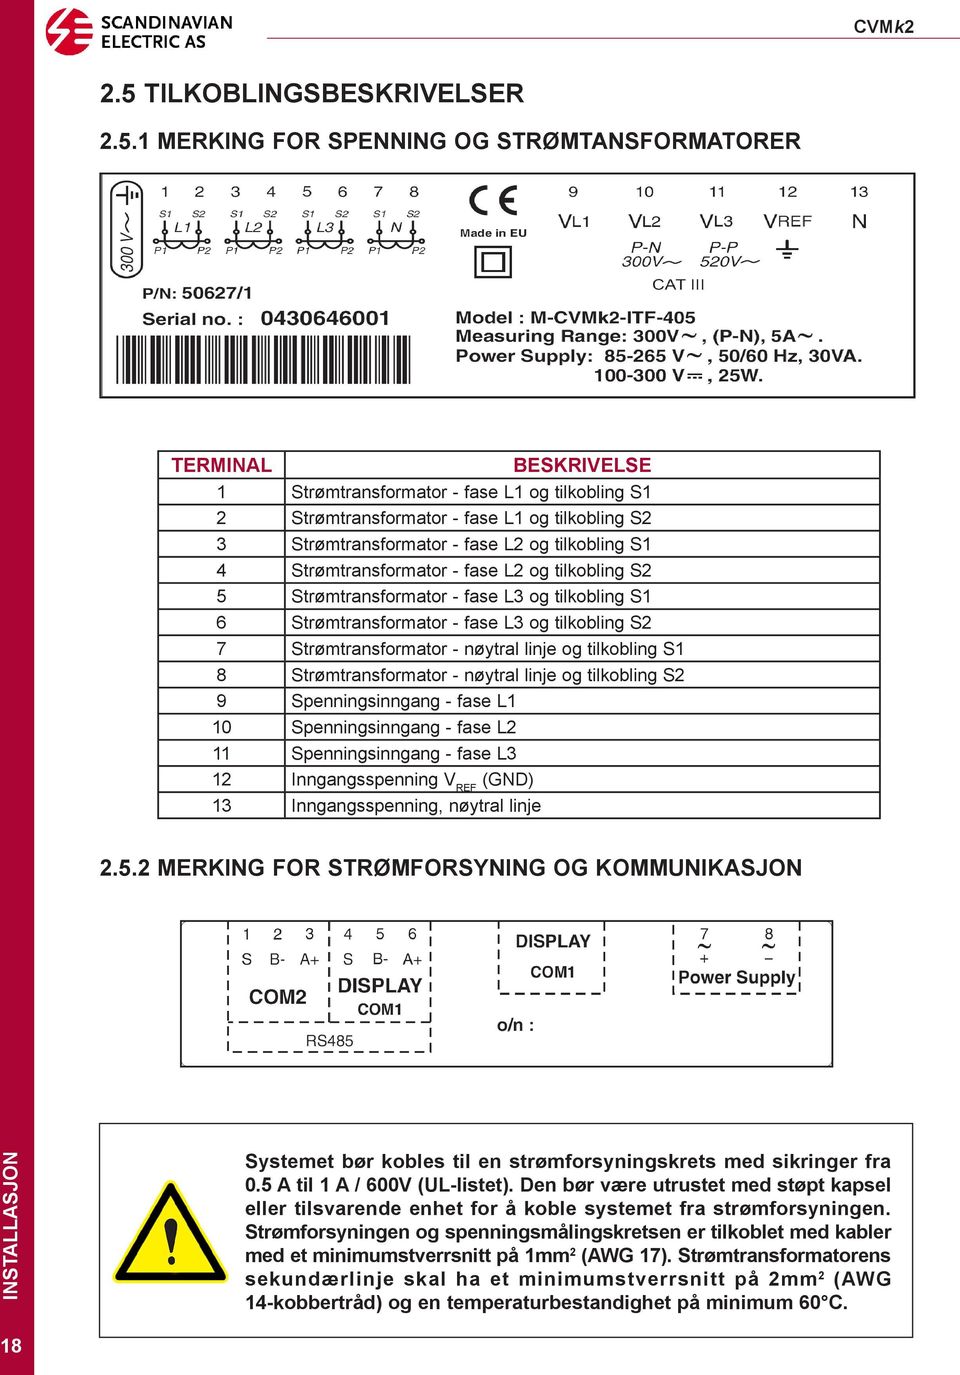 Strømtransformator - nøytral linje og tilkobling S1 8 Strømtransformator - nøytral linje og tilkobling S2 9 Spenningsinngang - fase L1 10 Spenningsinngang - fase L2 11 Spenningsinngang - fase L3 12